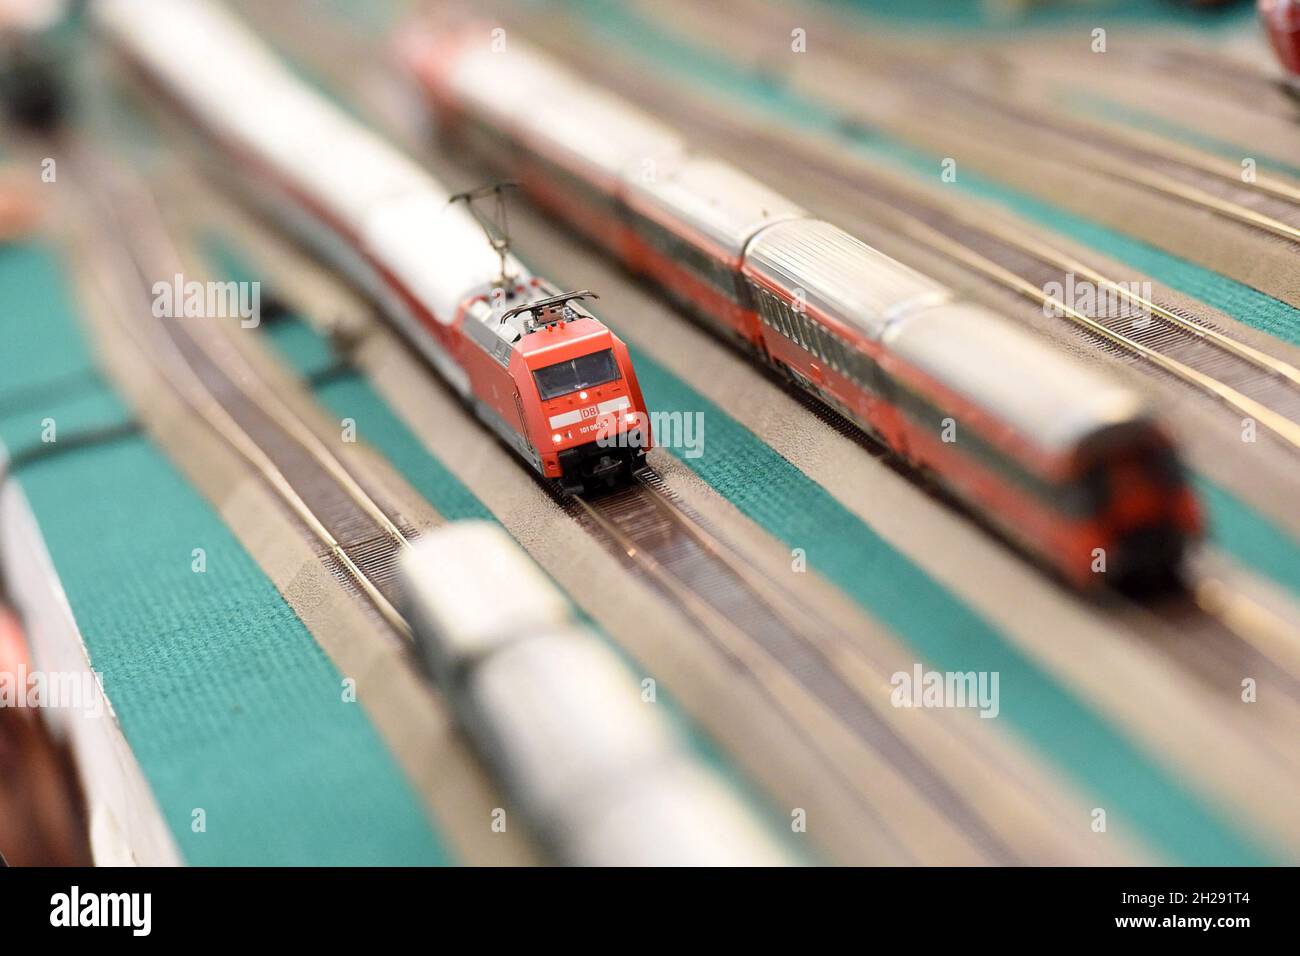 Modelleisenbahn-Anlage  in Gmunden, Österreich, Europa - Model railway system in Gmunden, Austria, Europe Stock Photo